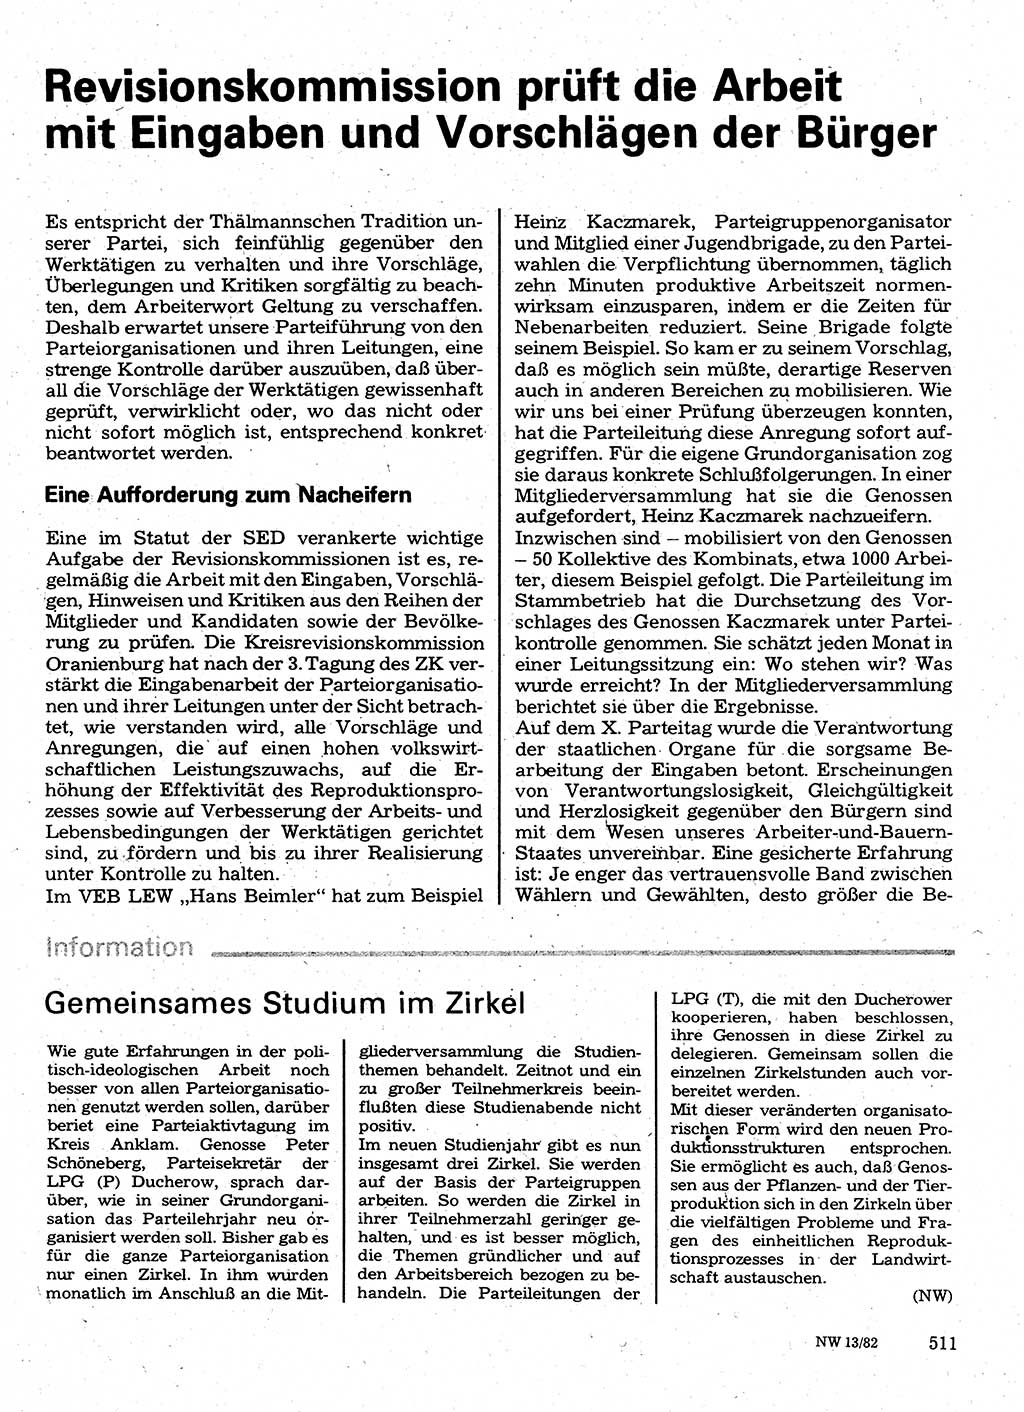 Neuer Weg (NW), Organ des Zentralkomitees (ZK) der SED (Sozialistische Einheitspartei Deutschlands) fÃ¼r Fragen des Parteilebens, 37. Jahrgang [Deutsche Demokratische Republik (DDR)] 1982, Seite 511 (NW ZK SED DDR 1982, S. 511)